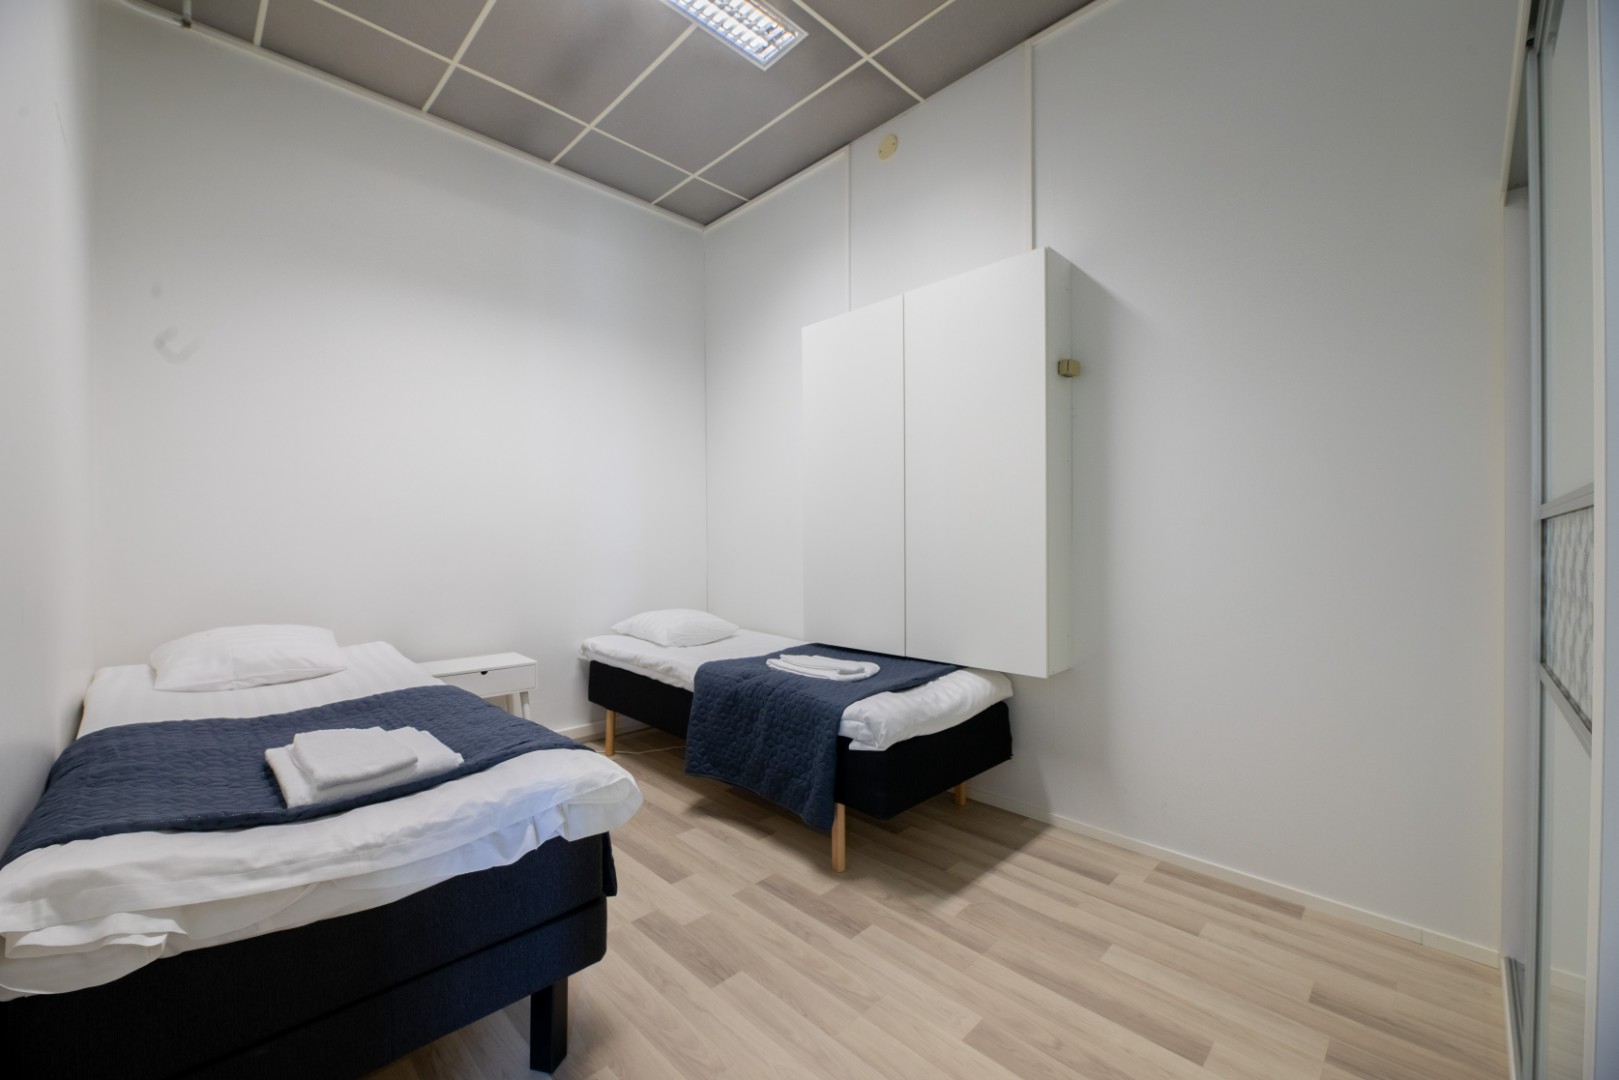 Bedroom 2: 2 x 80cm bed